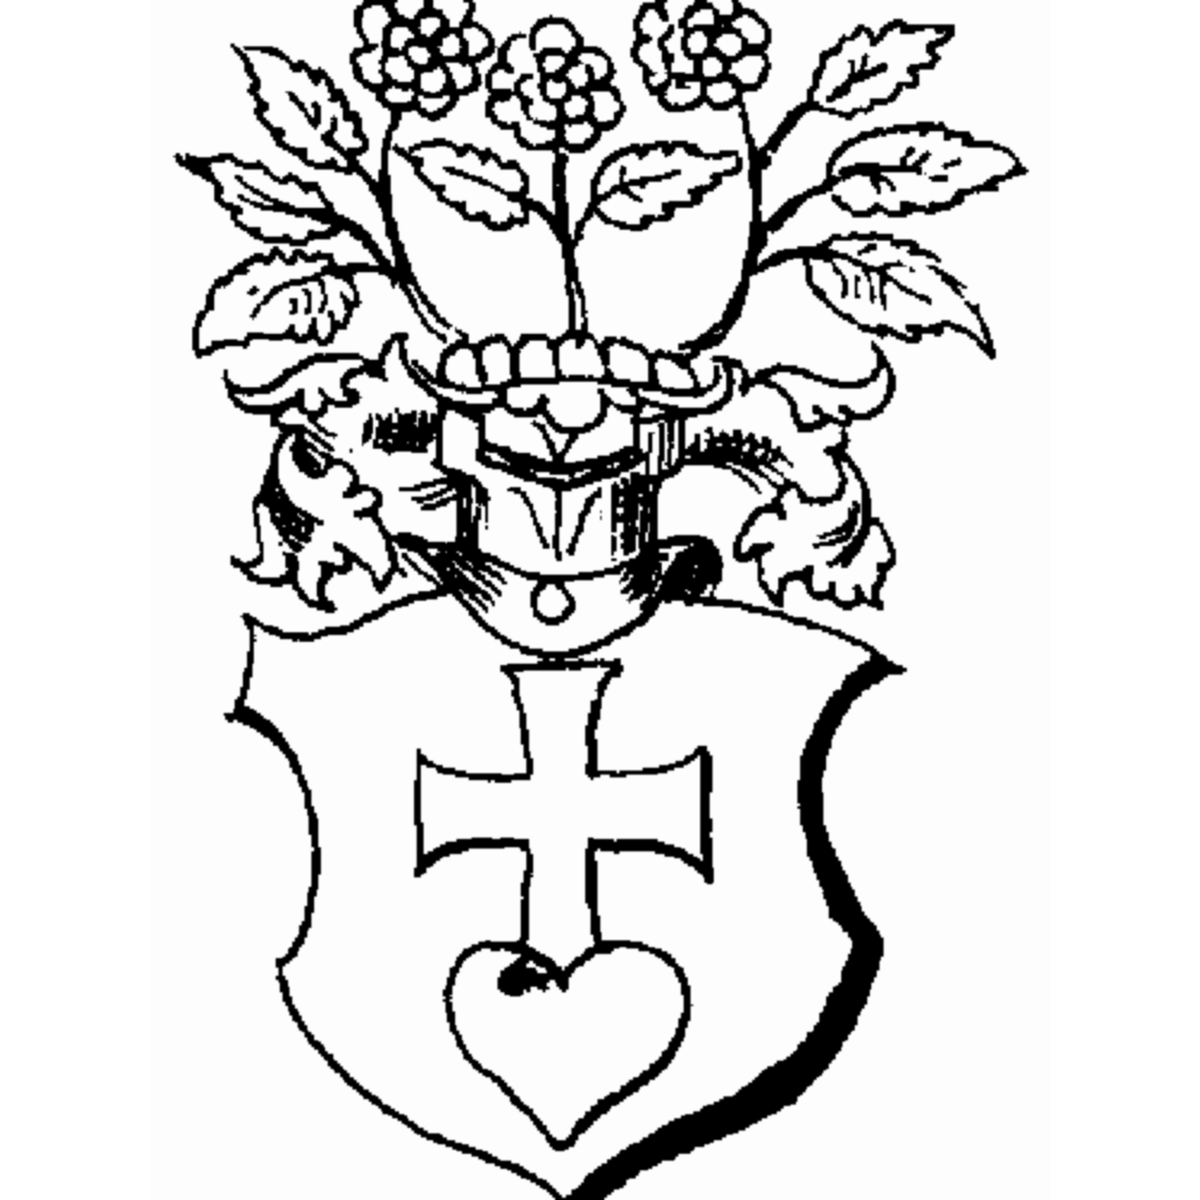 Coat of arms of family Pirchinger